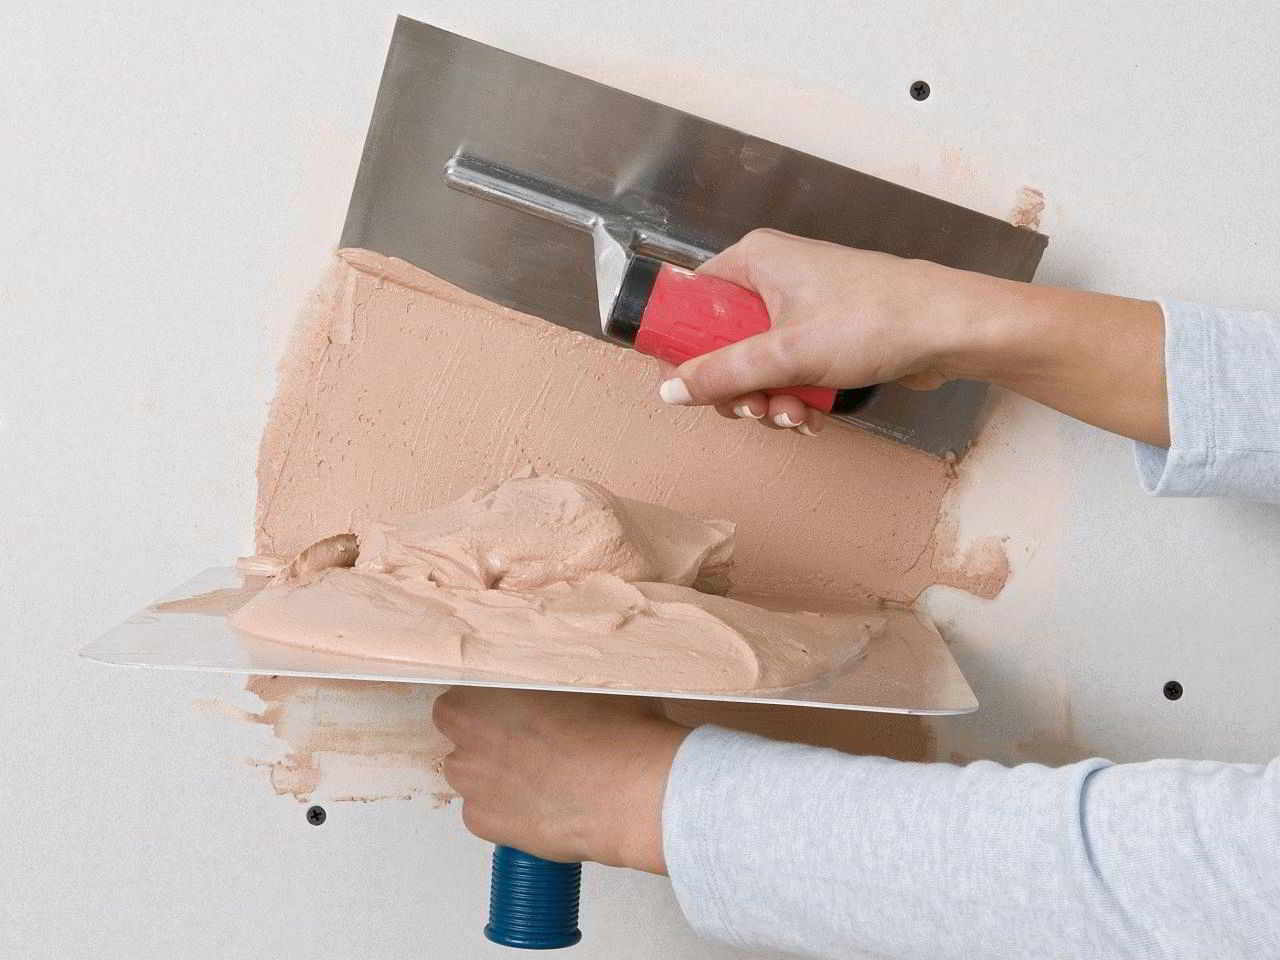 Оштукатуривание стен гипсовой штукатуркой: Журнал о дизайне интерьеров и ремонте Идеи вашего дома — IVD.ru